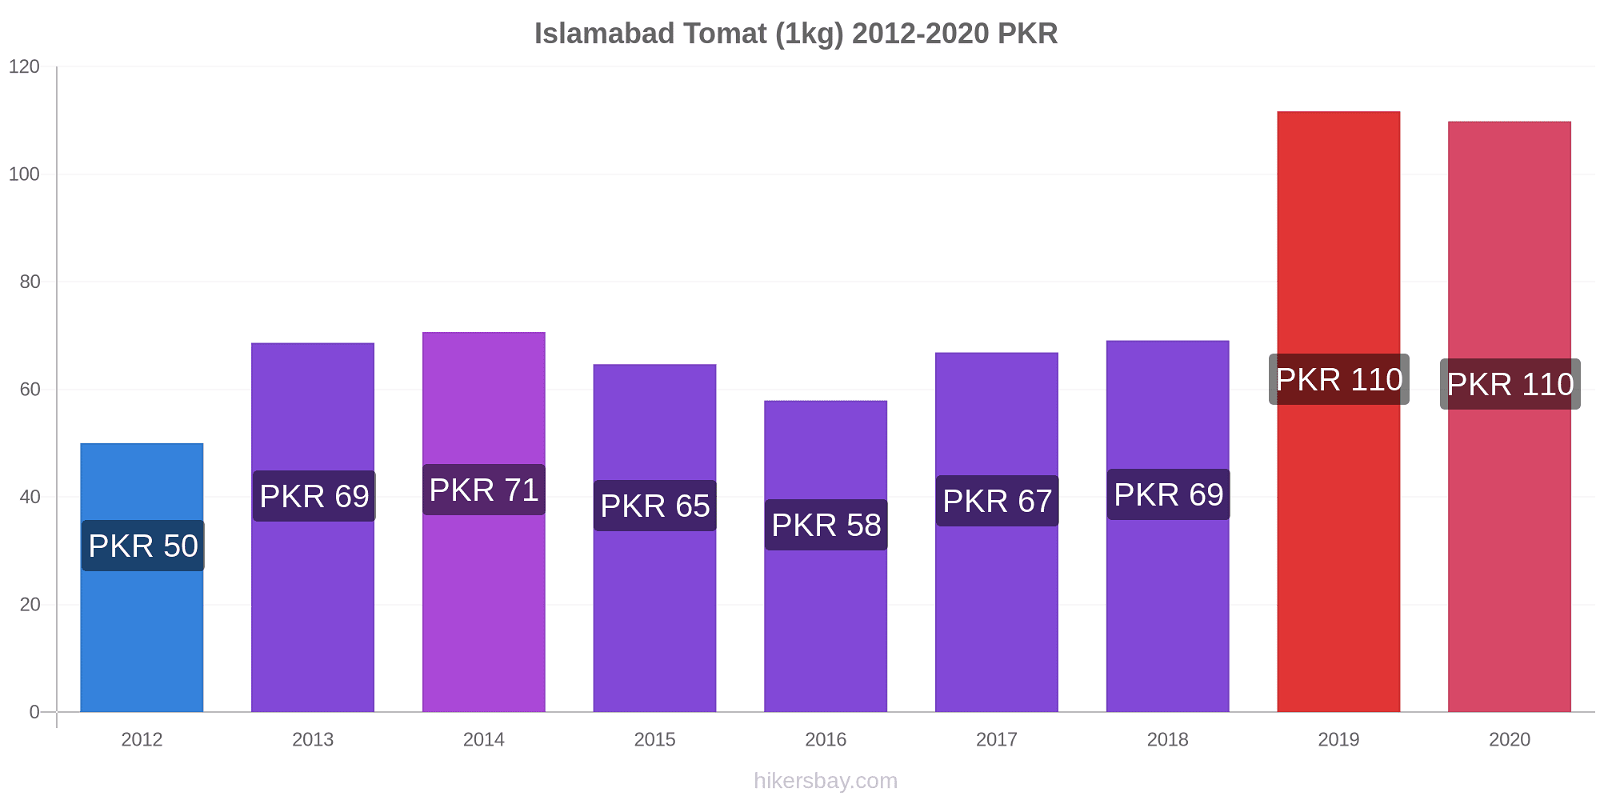 Islamabad prisförändringar Tomat (1kg) hikersbay.com